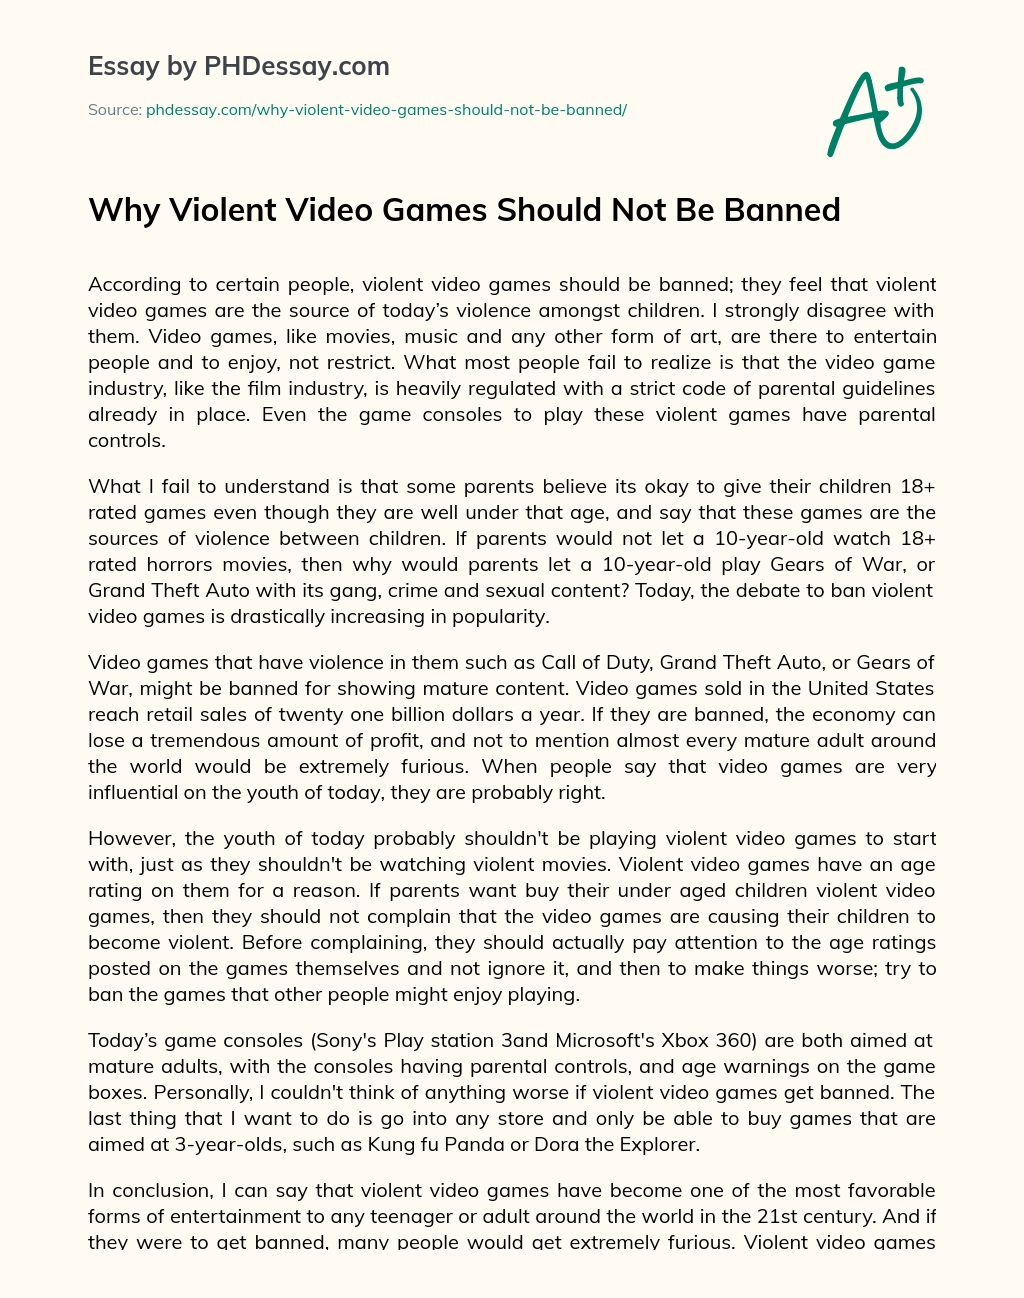 argumentative essay on violent games